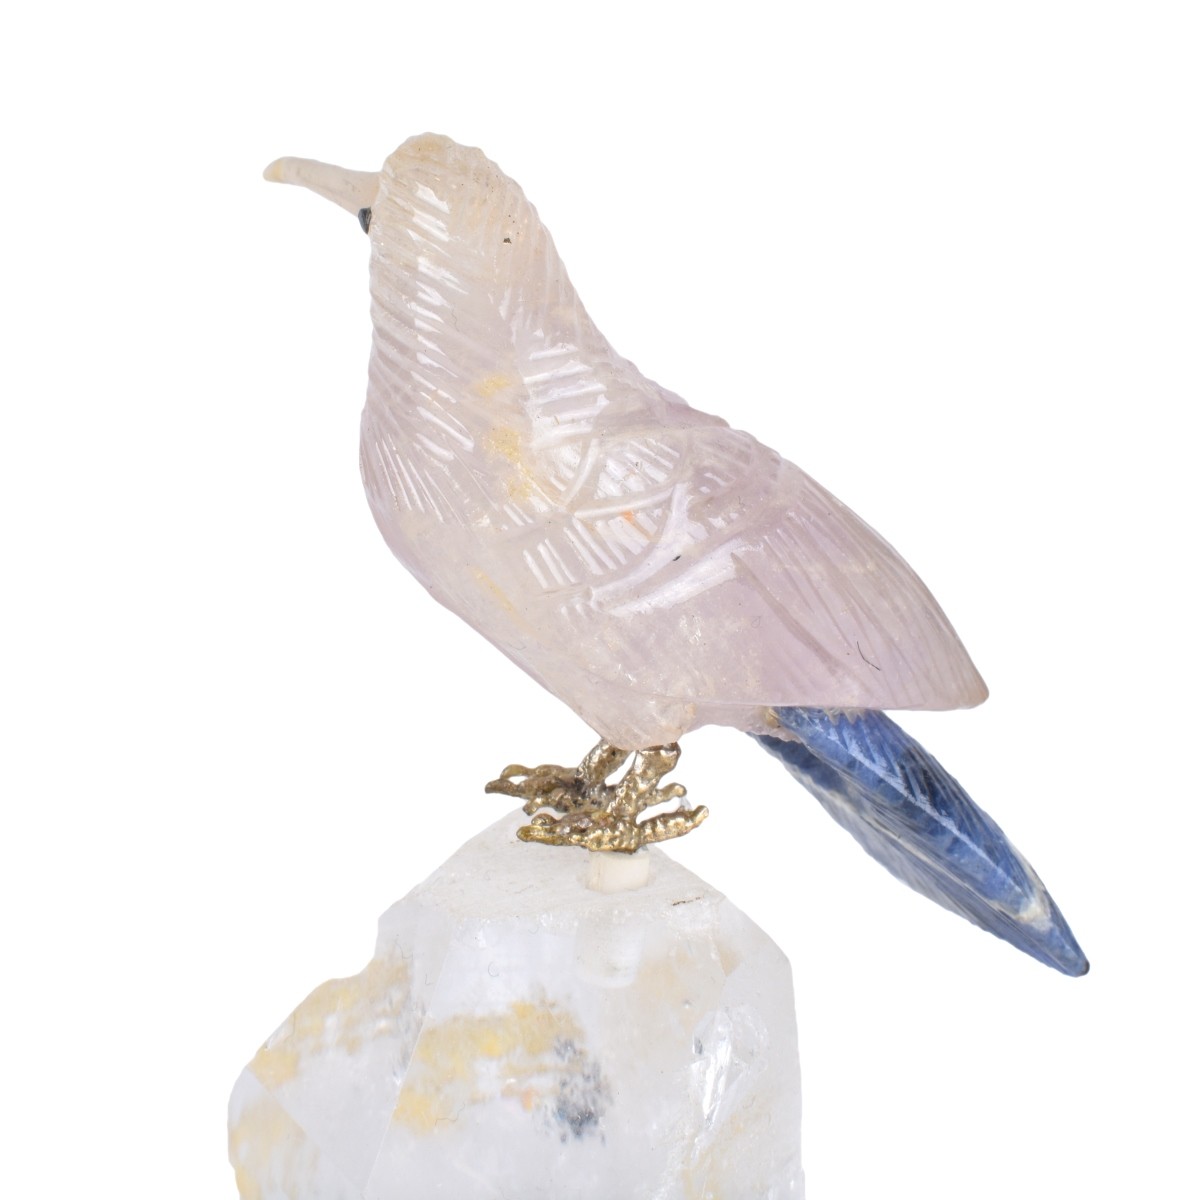 Three (3) Gemstone Bird Sculptures